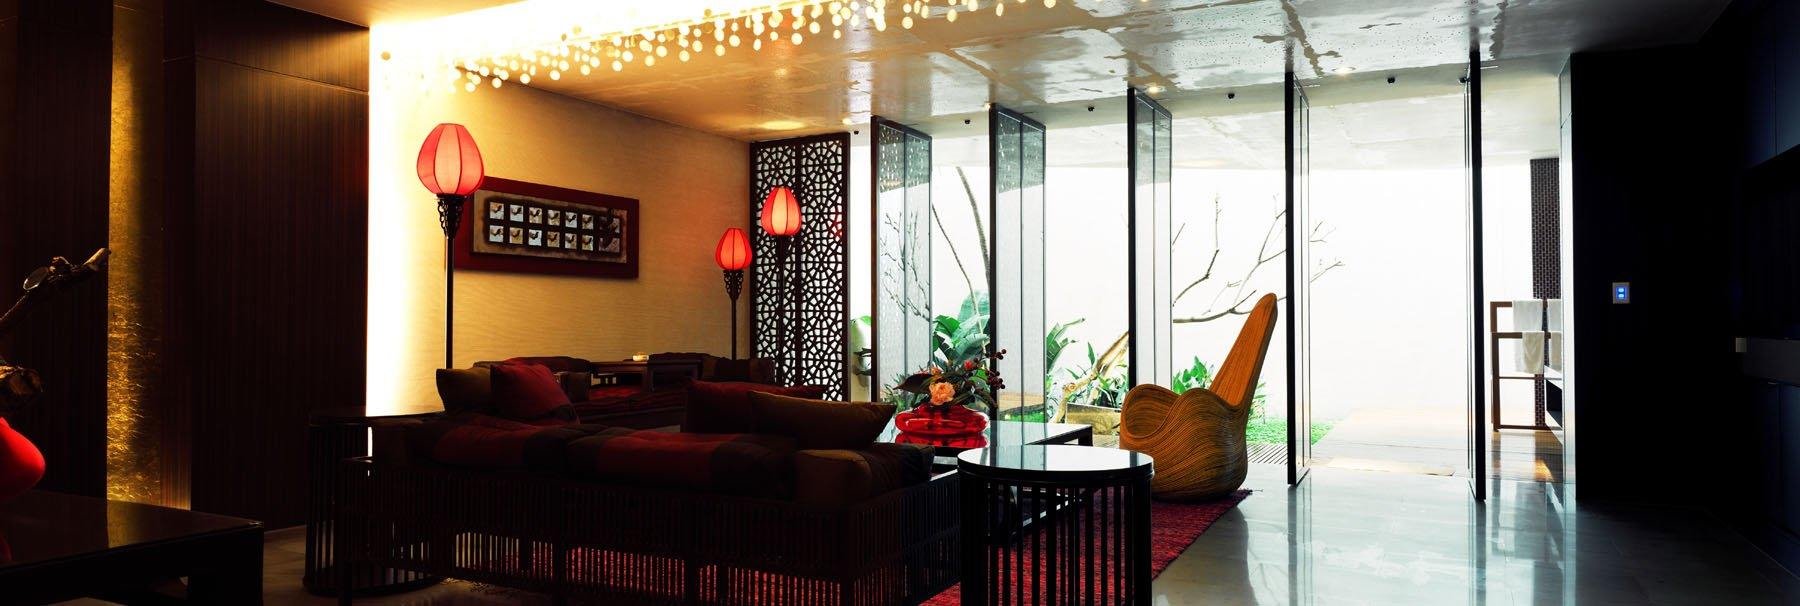 台湾汽车旅馆内部空间设计